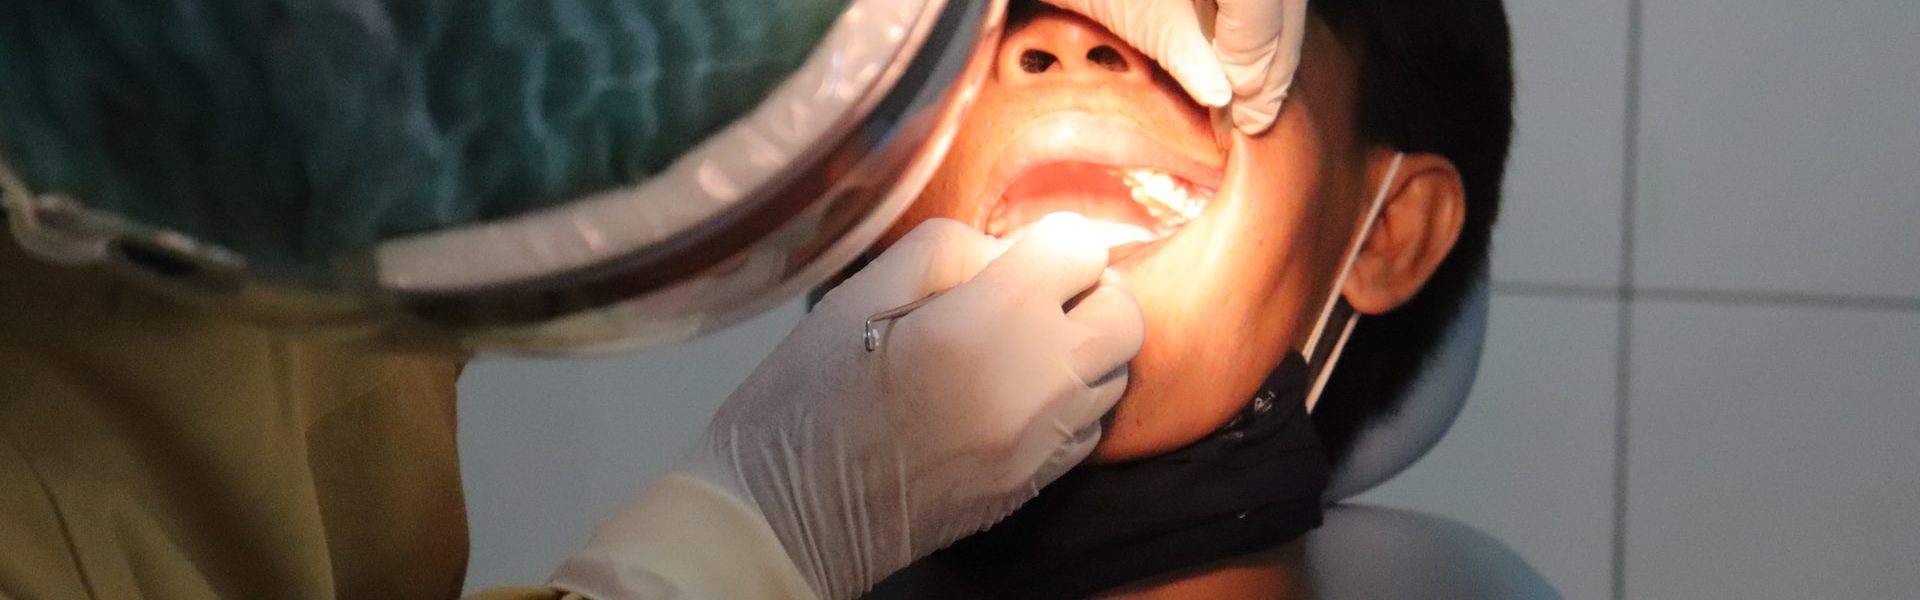 leczenie stomatologiczne, dentysta